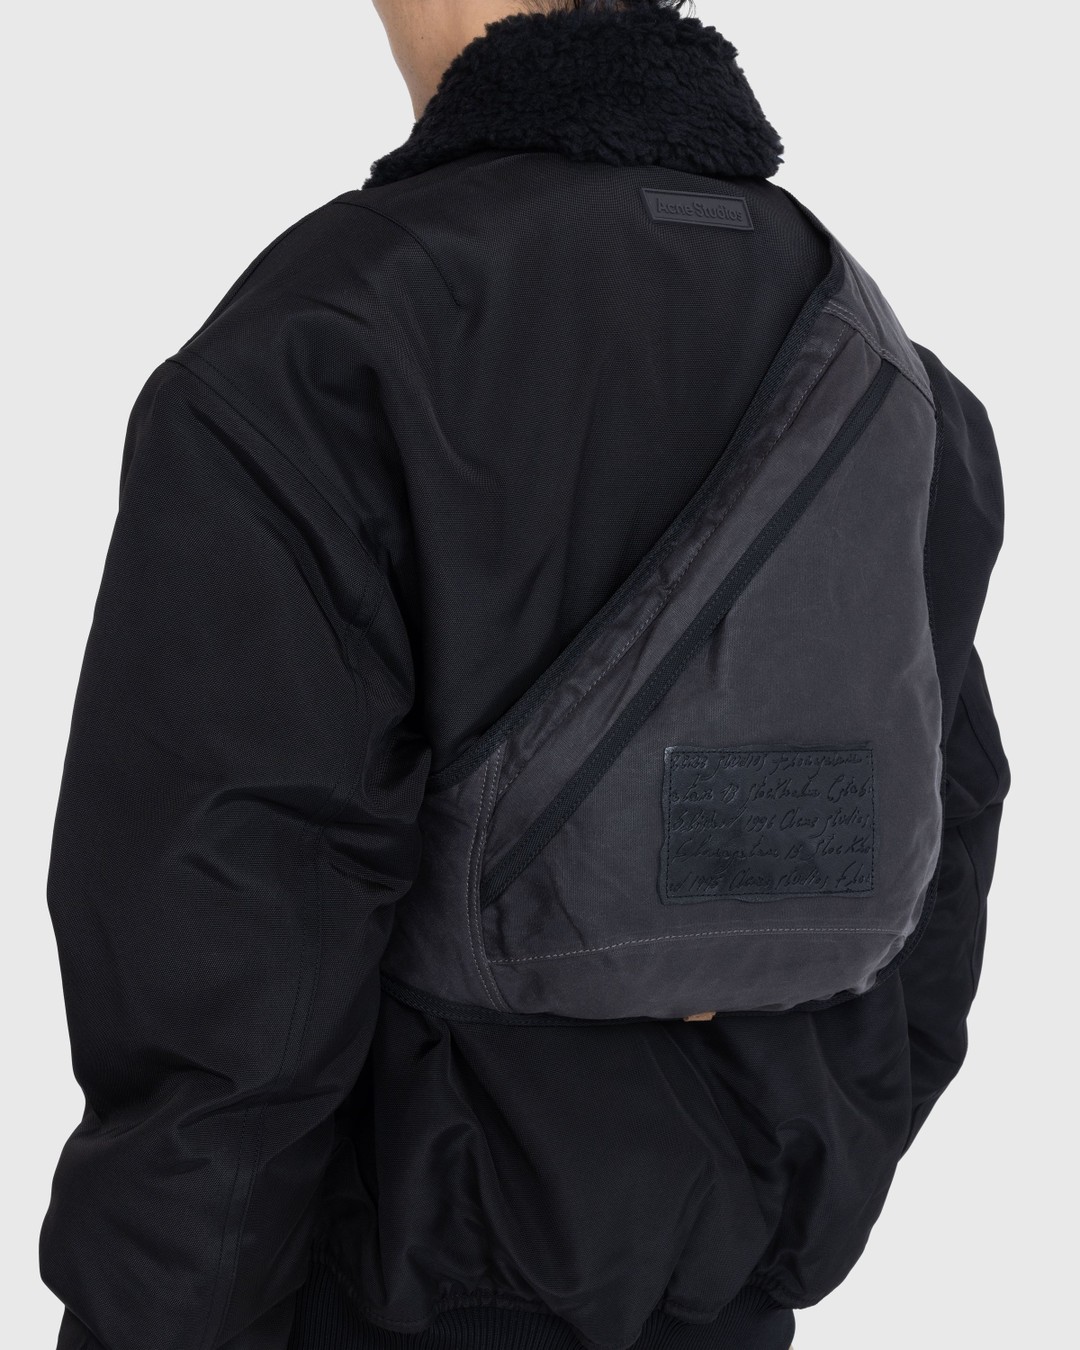 Acne Studios – Sling Backpack Grey/Black - Bags - Multi - Image 5